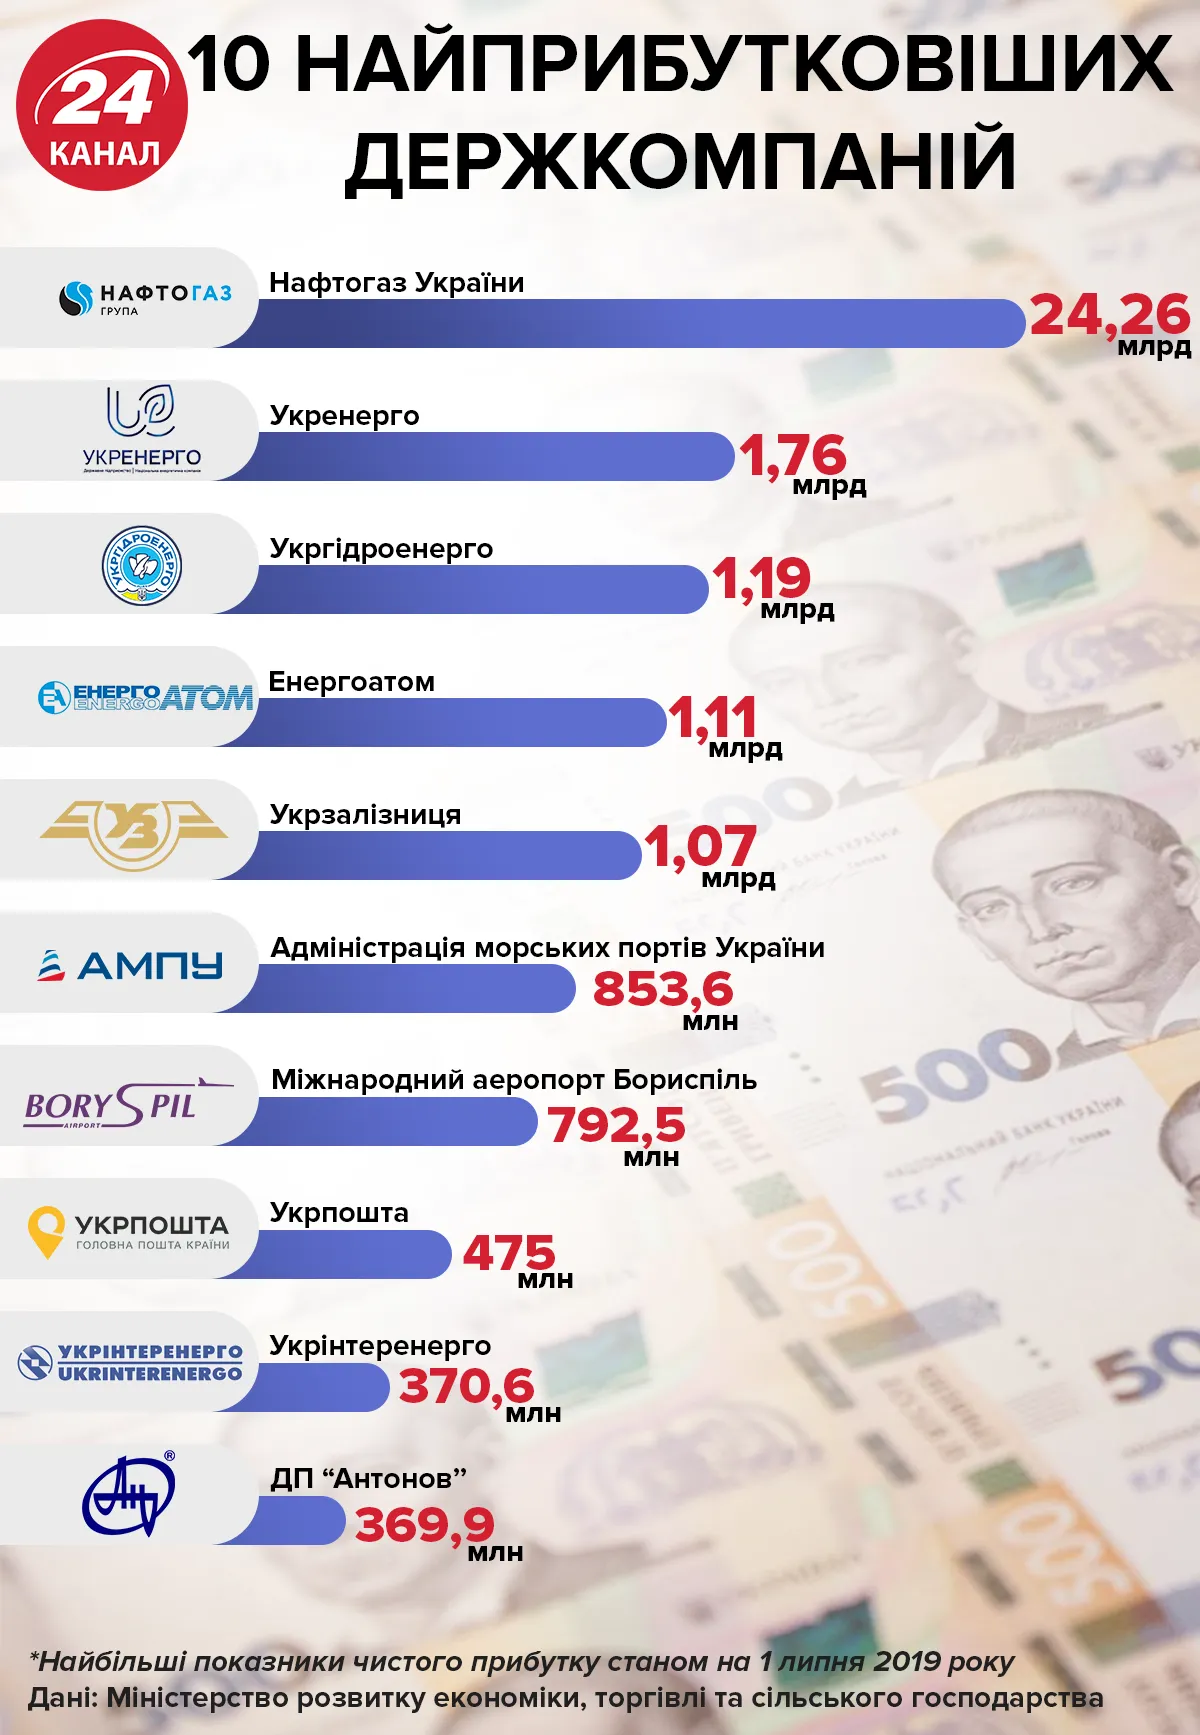 найприбутковіші державні компанії України Нафтогаз Укрзалізниця